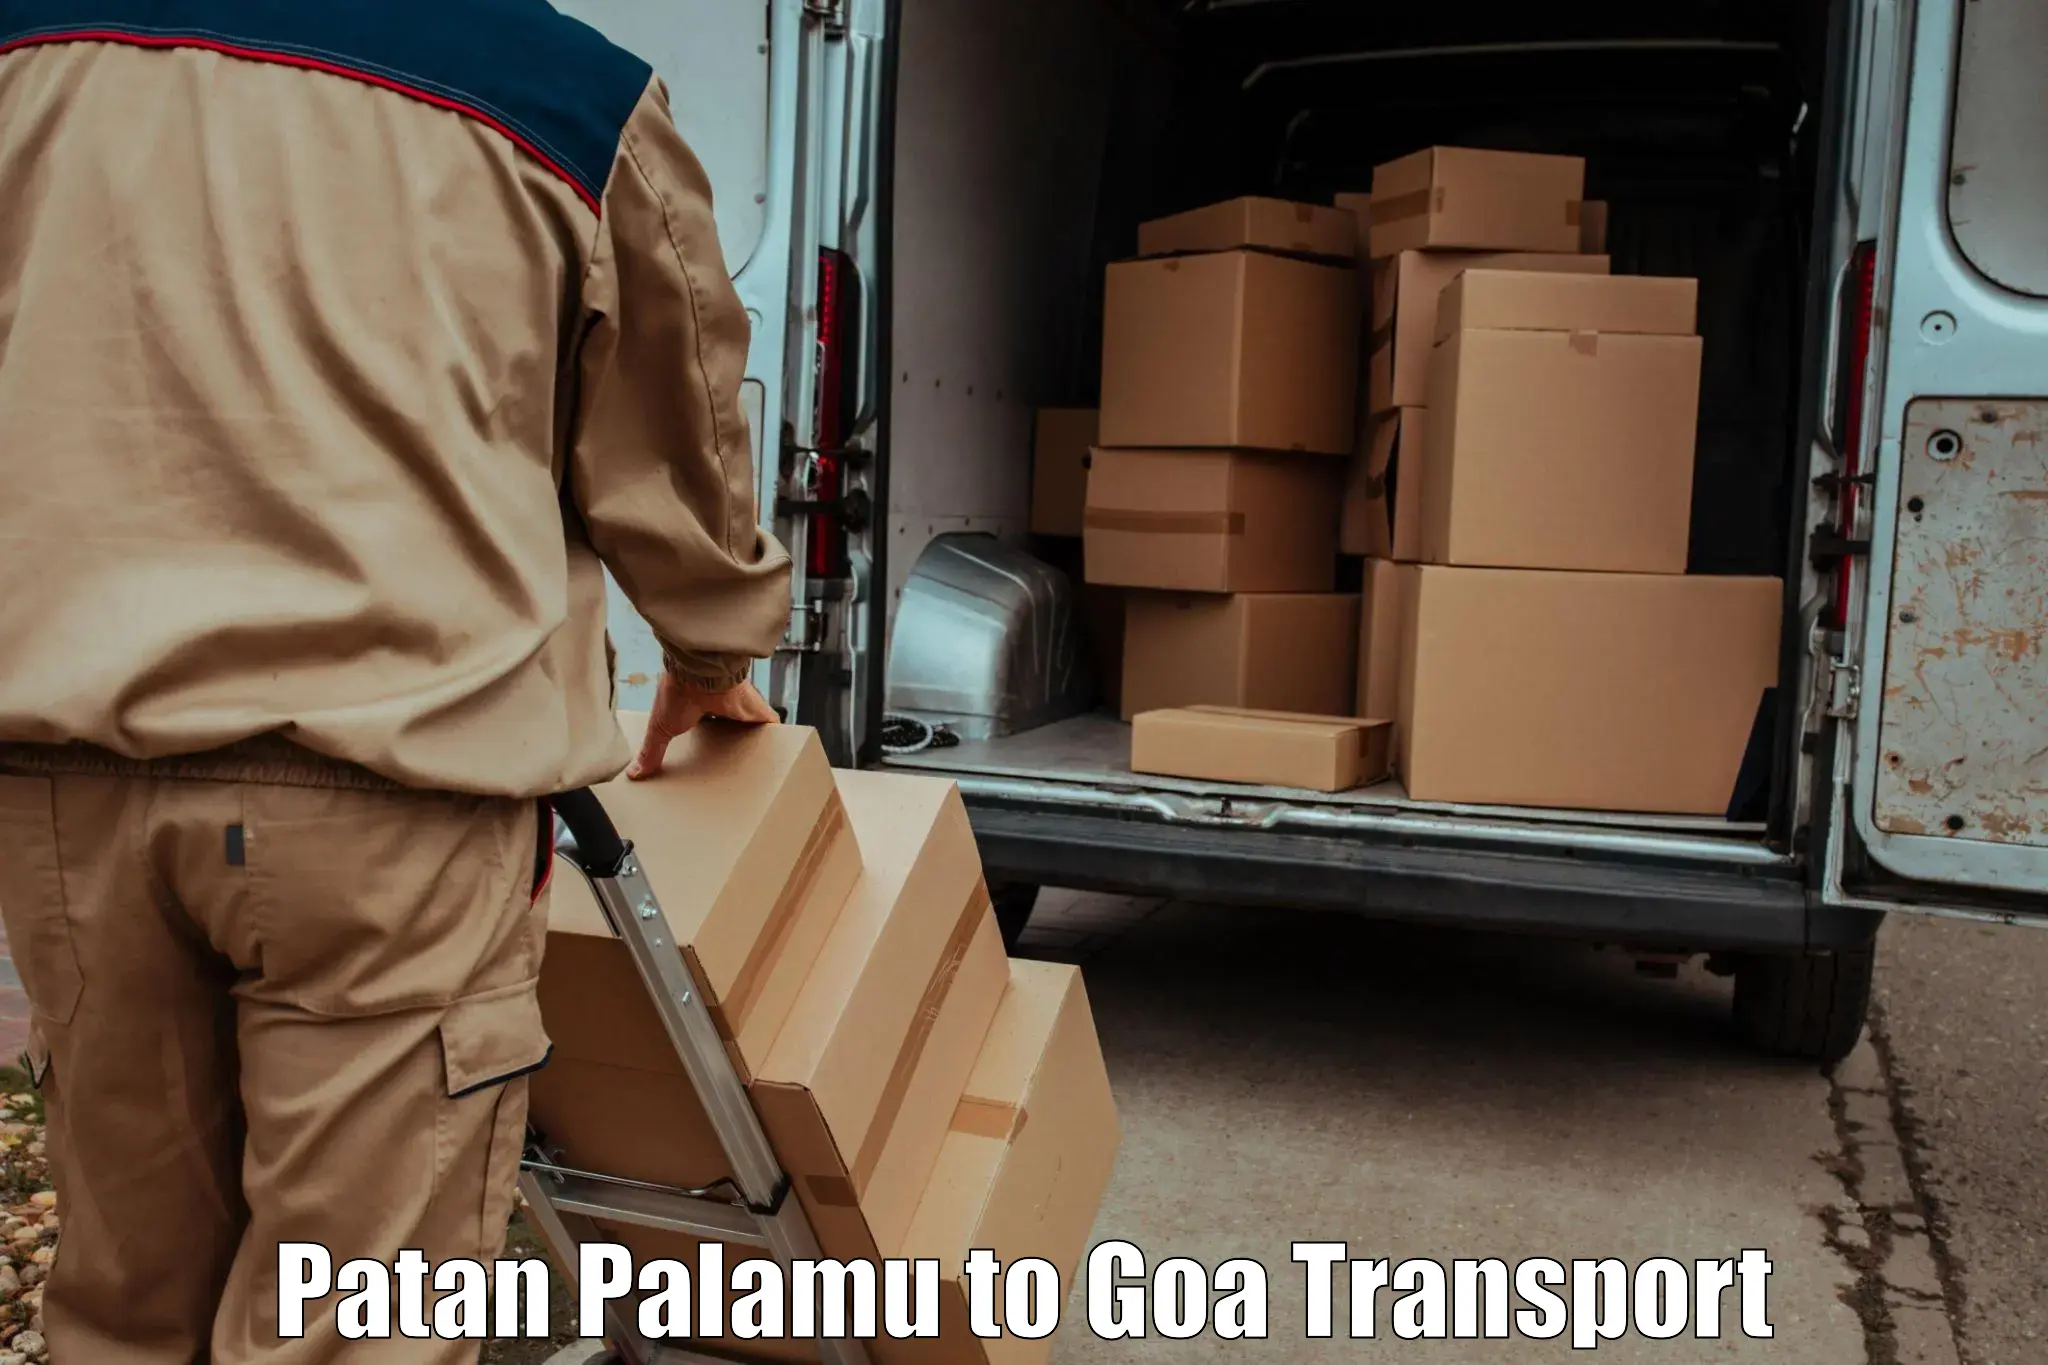 Transport in sharing Patan Palamu to Goa University